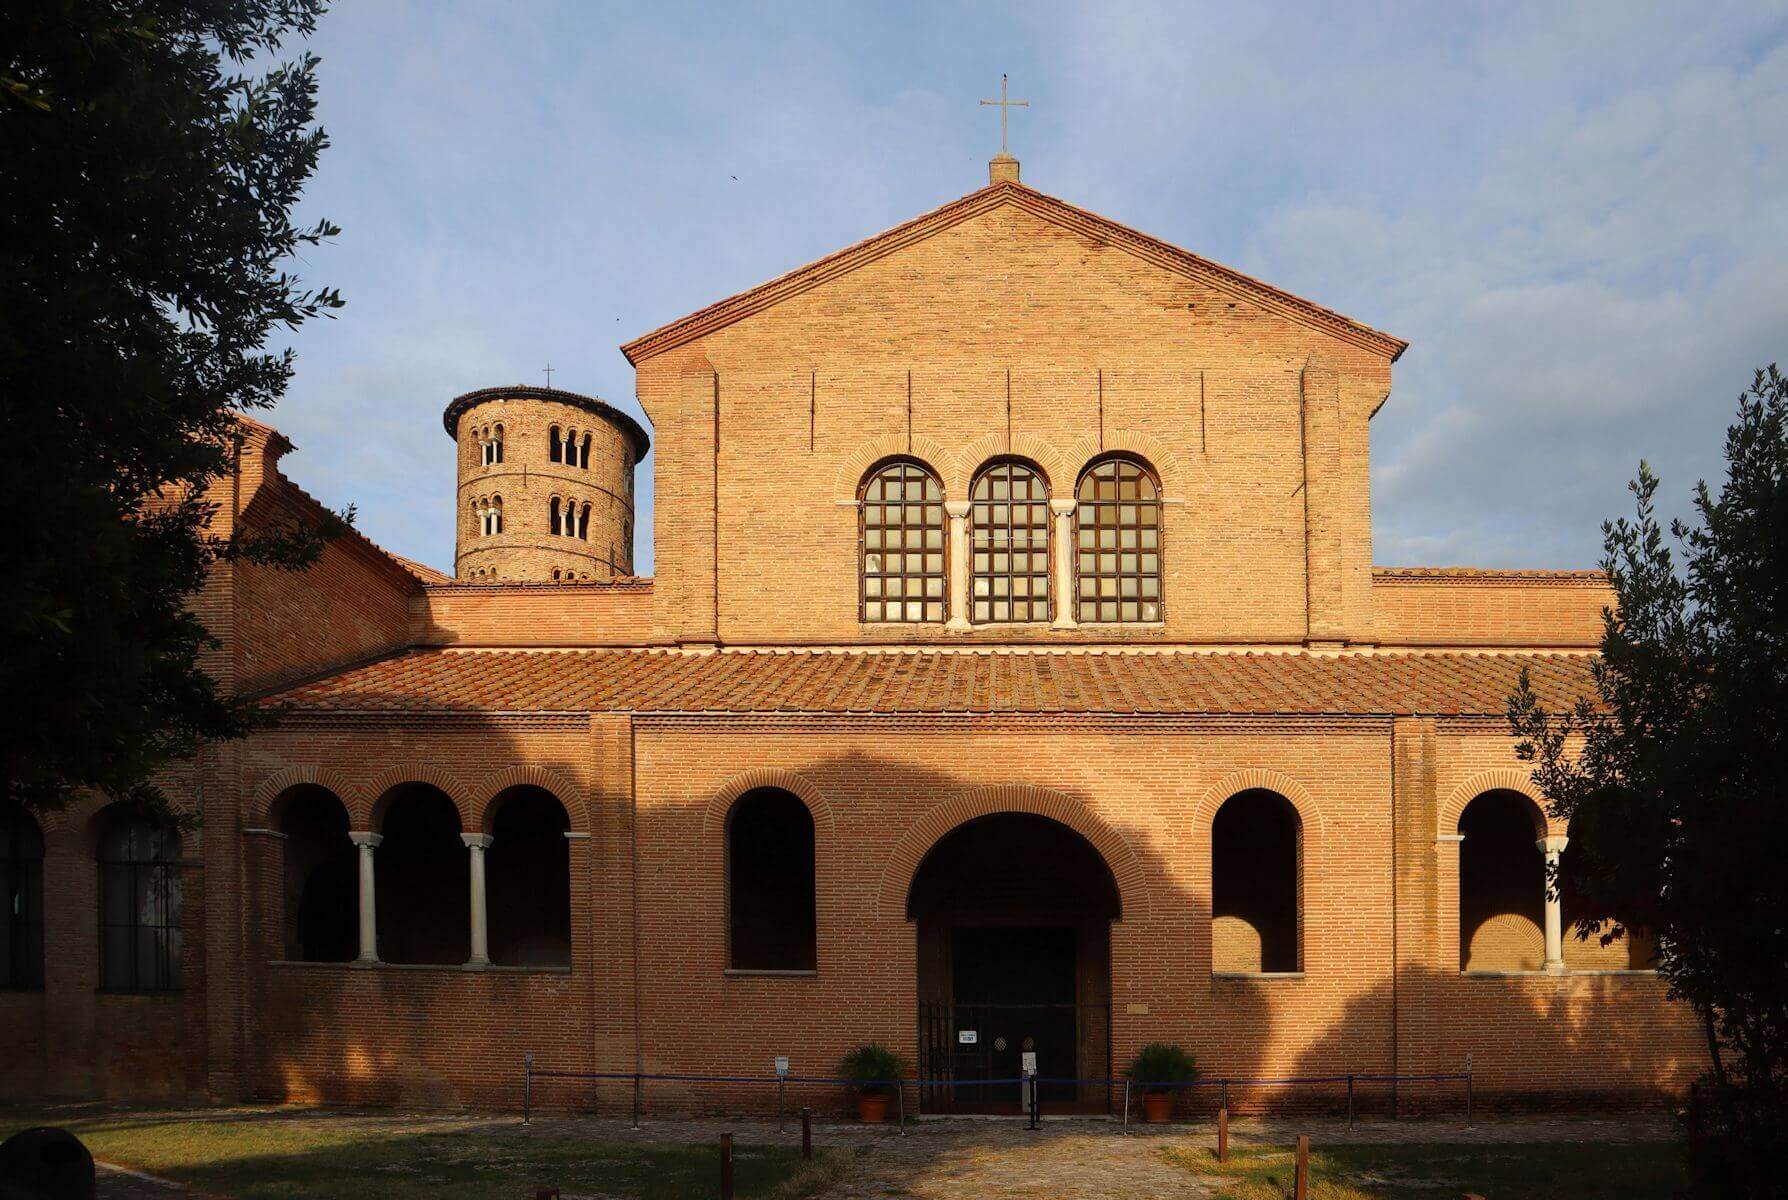 Sant'Apollinare in Classe in Ravenna